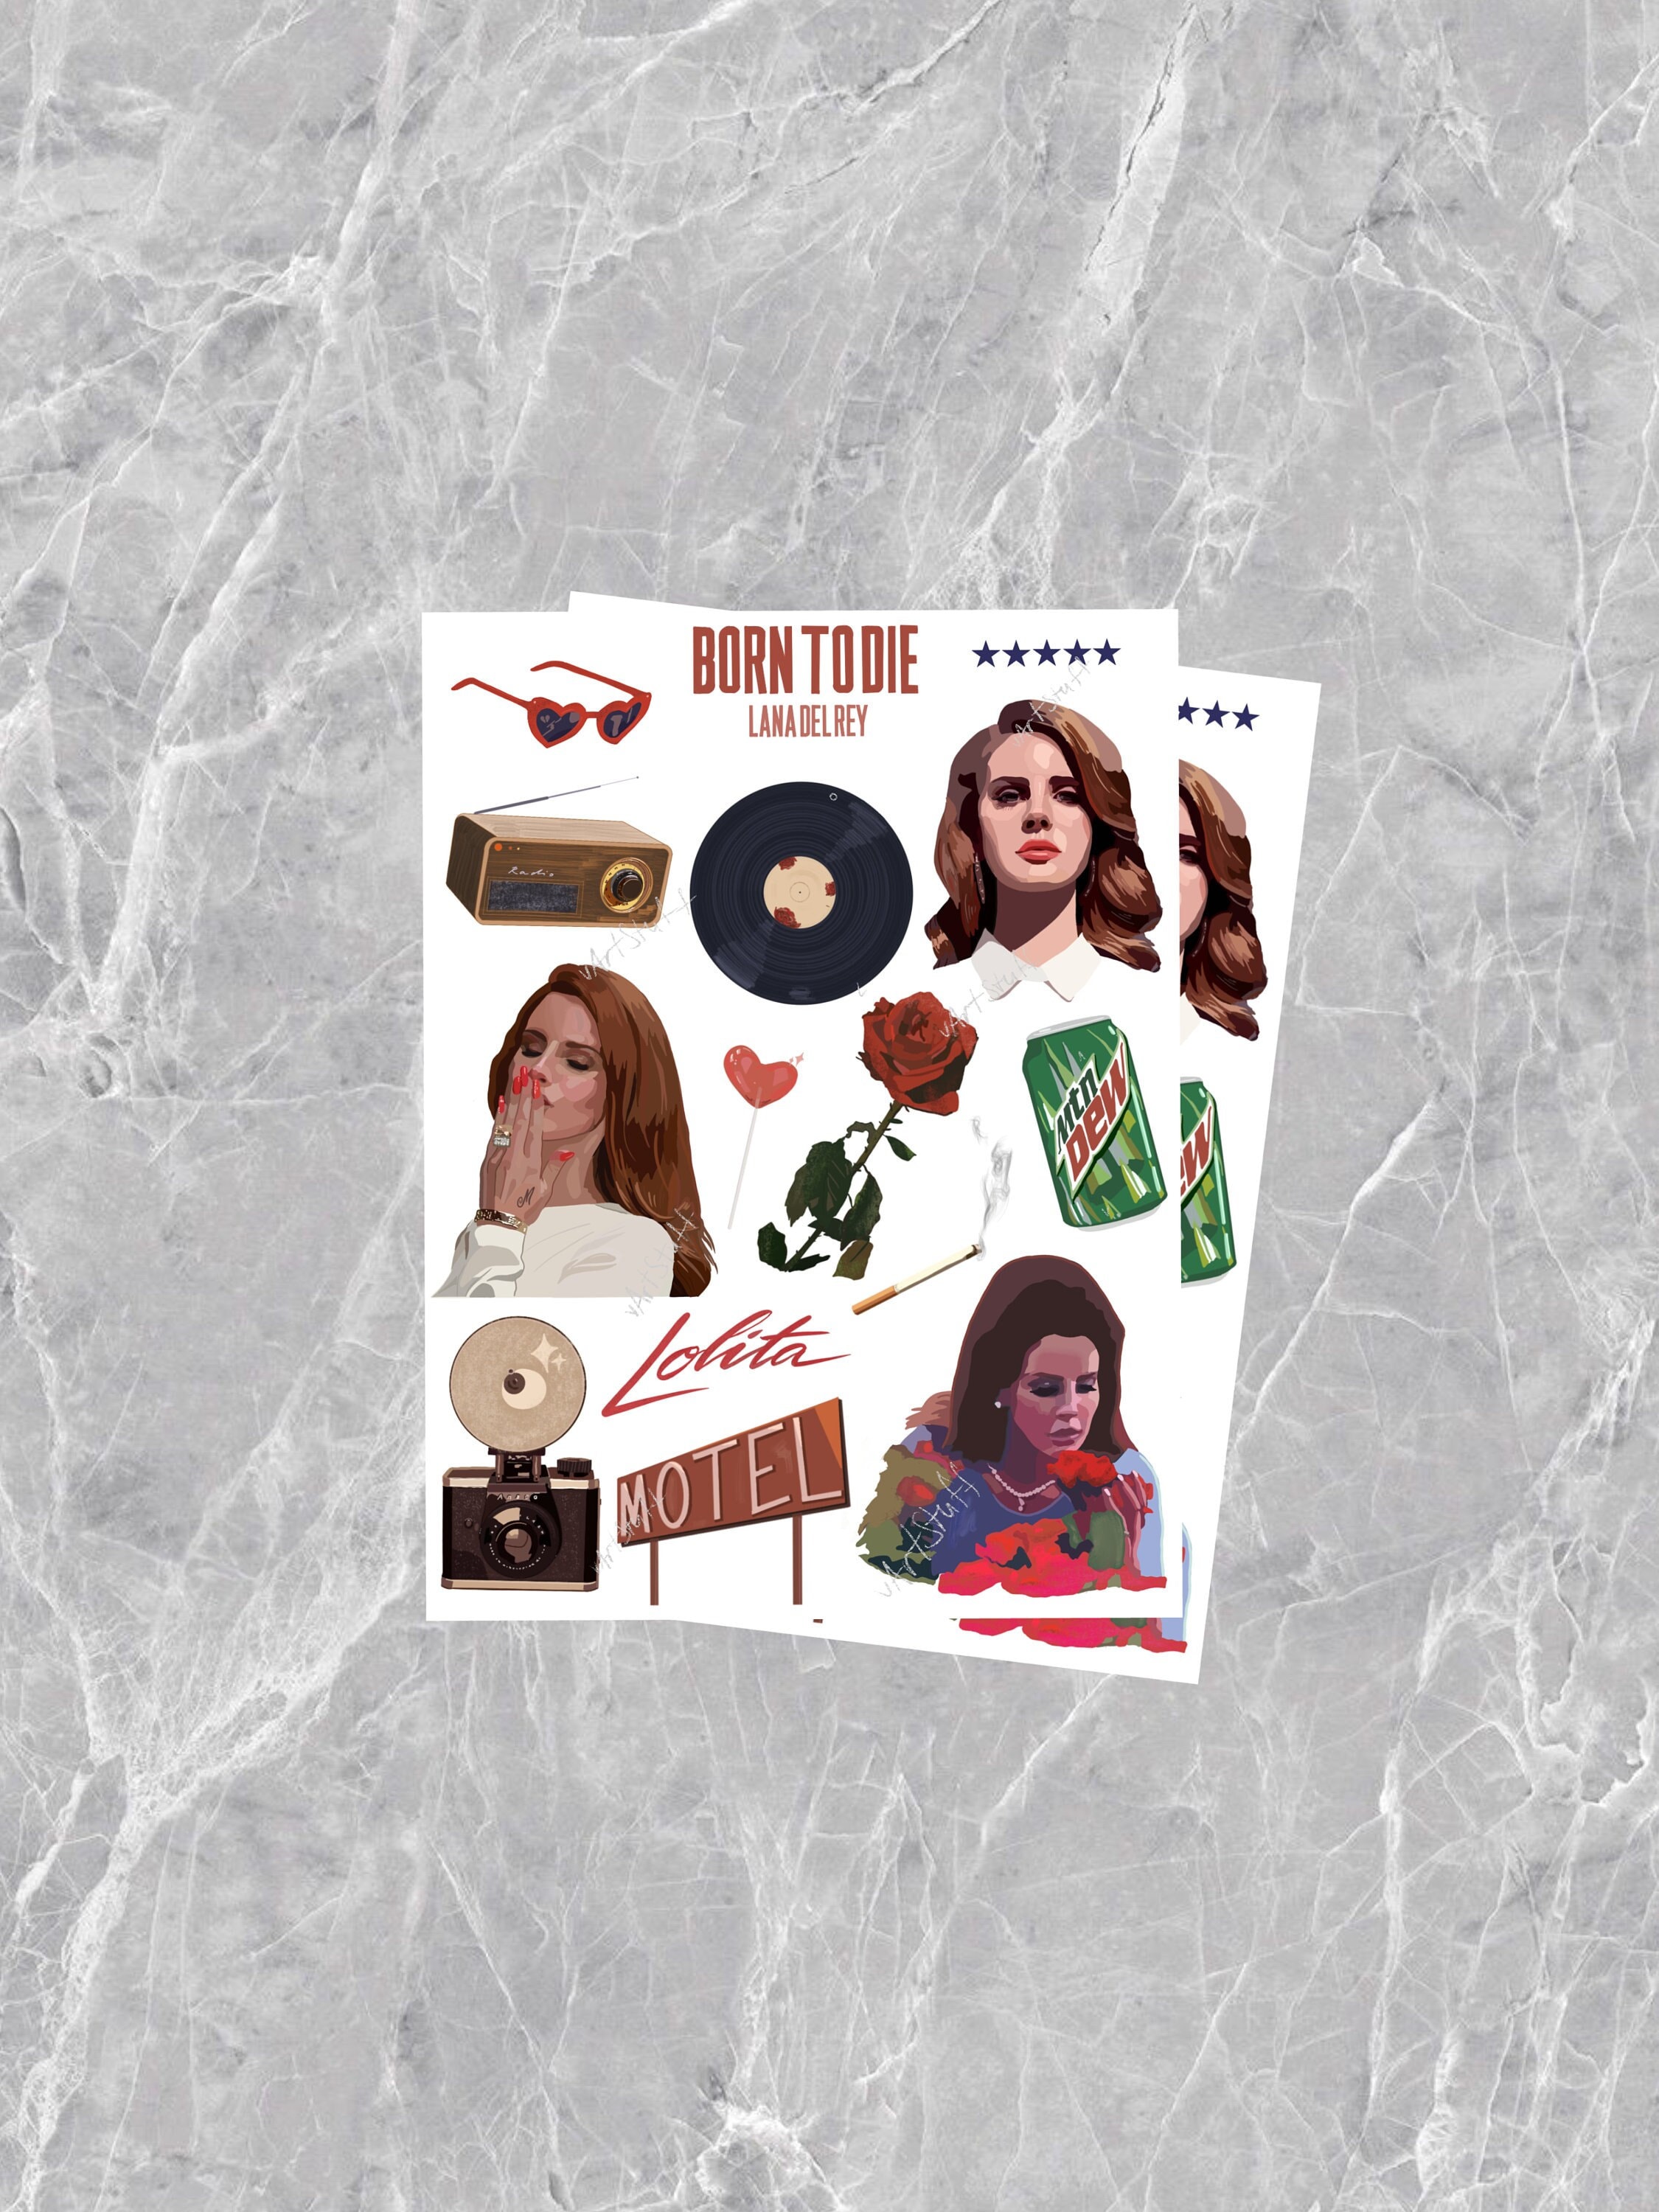 25PCS Singer Lana Del Rey Stickers Born To Die Honeymoon Paradise for  Laptop Luggage Car Skateboard Helmet Waterproof Decals